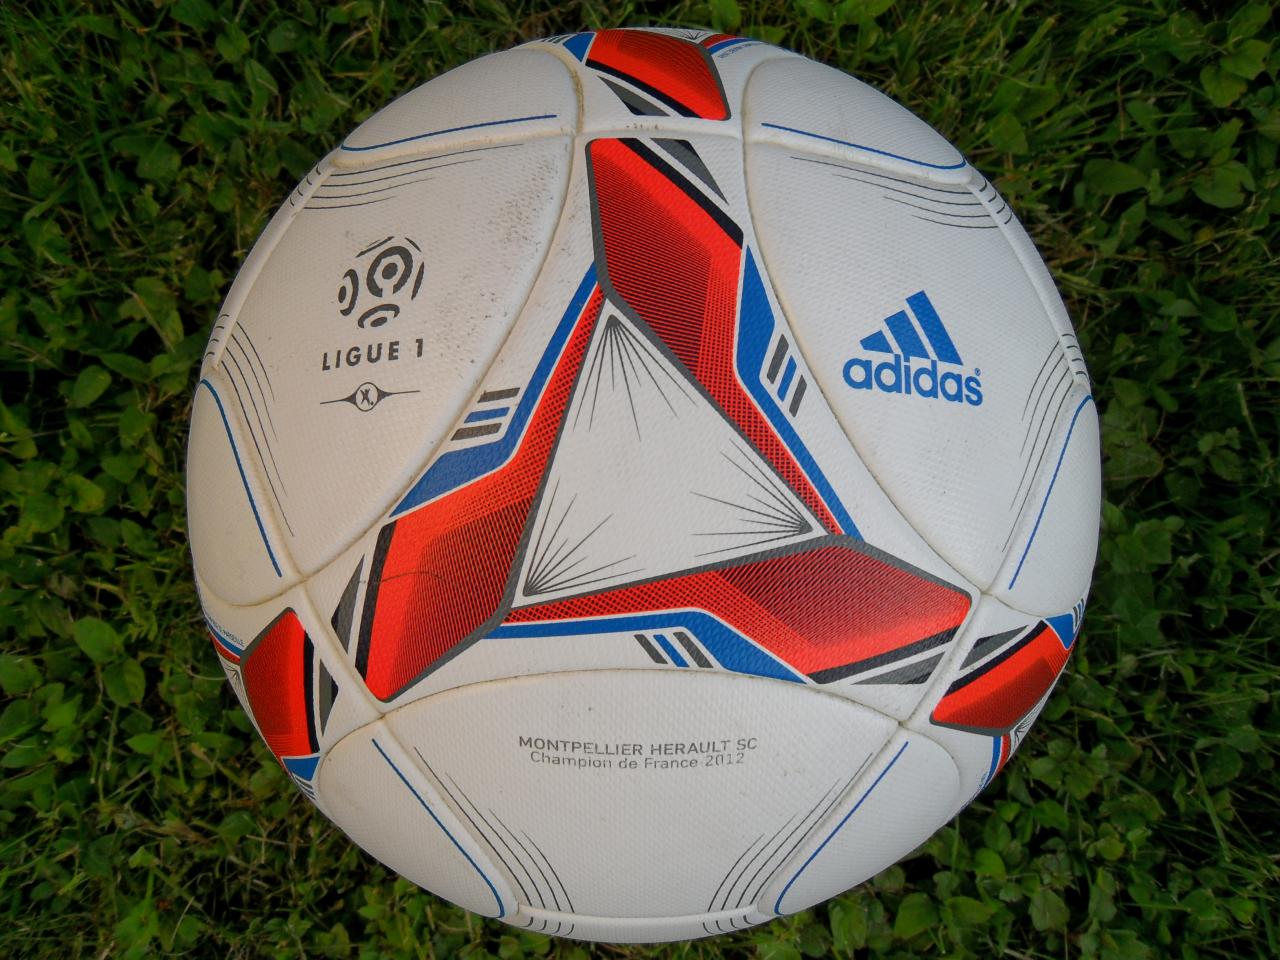 Ballon officiel ADIDAS ligue 1 2012-2013 1ère partie de championnat.